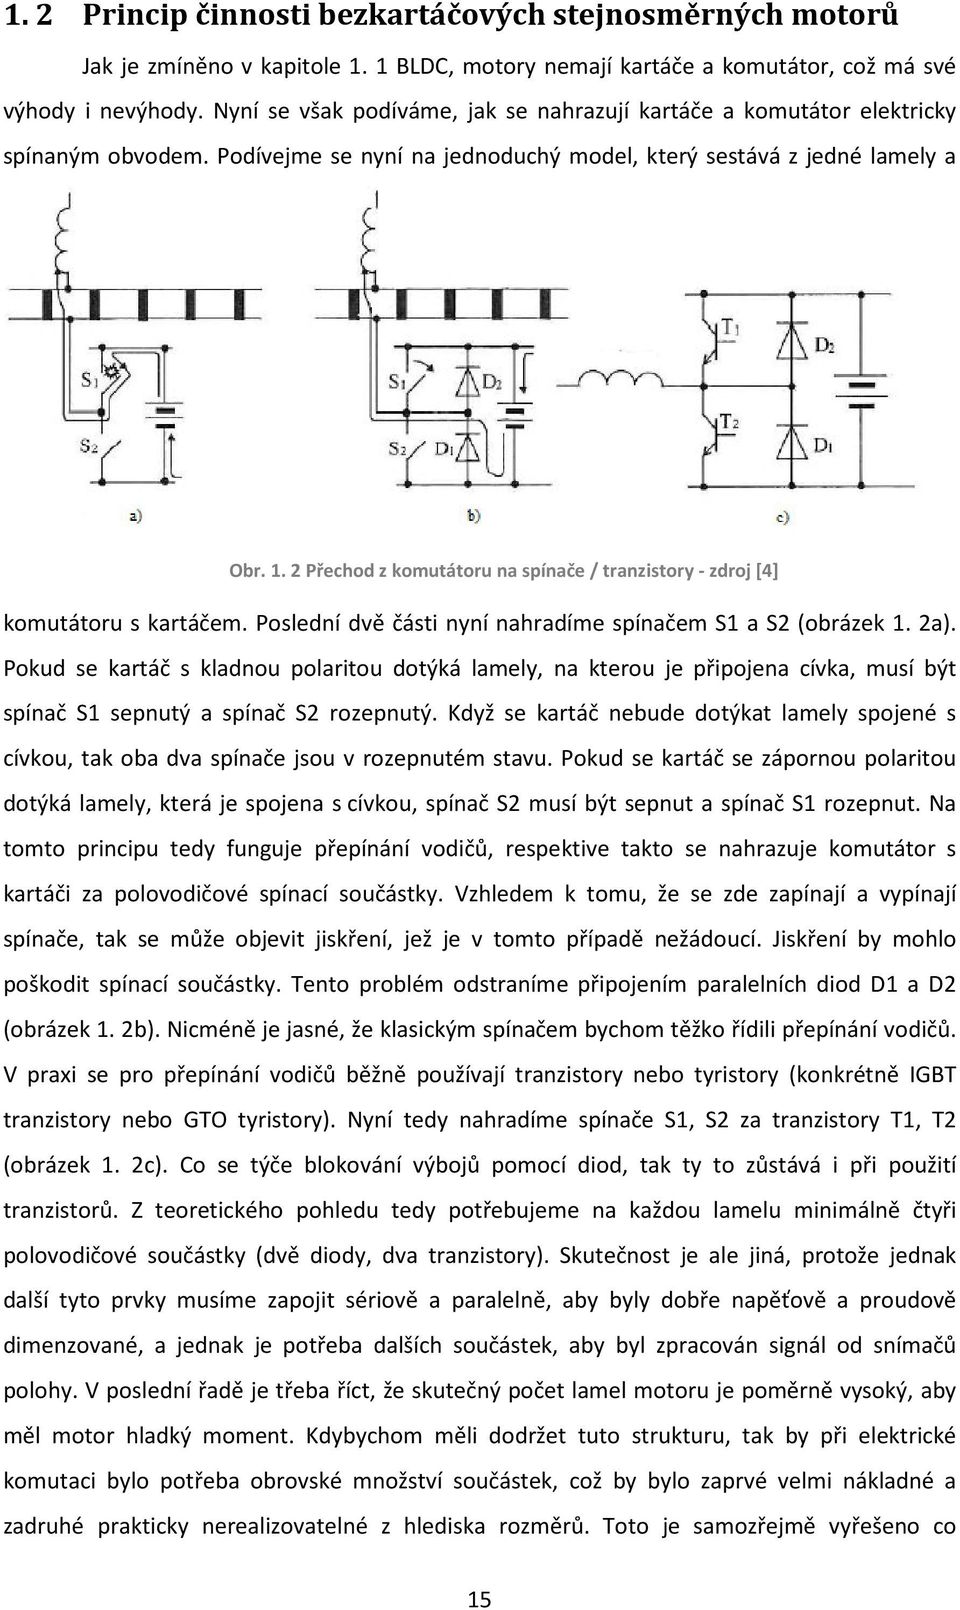 Bezkartáčový stejnosměrný trakční motor 13 kw s permanentními magnety - PDF  Stažení zdarma